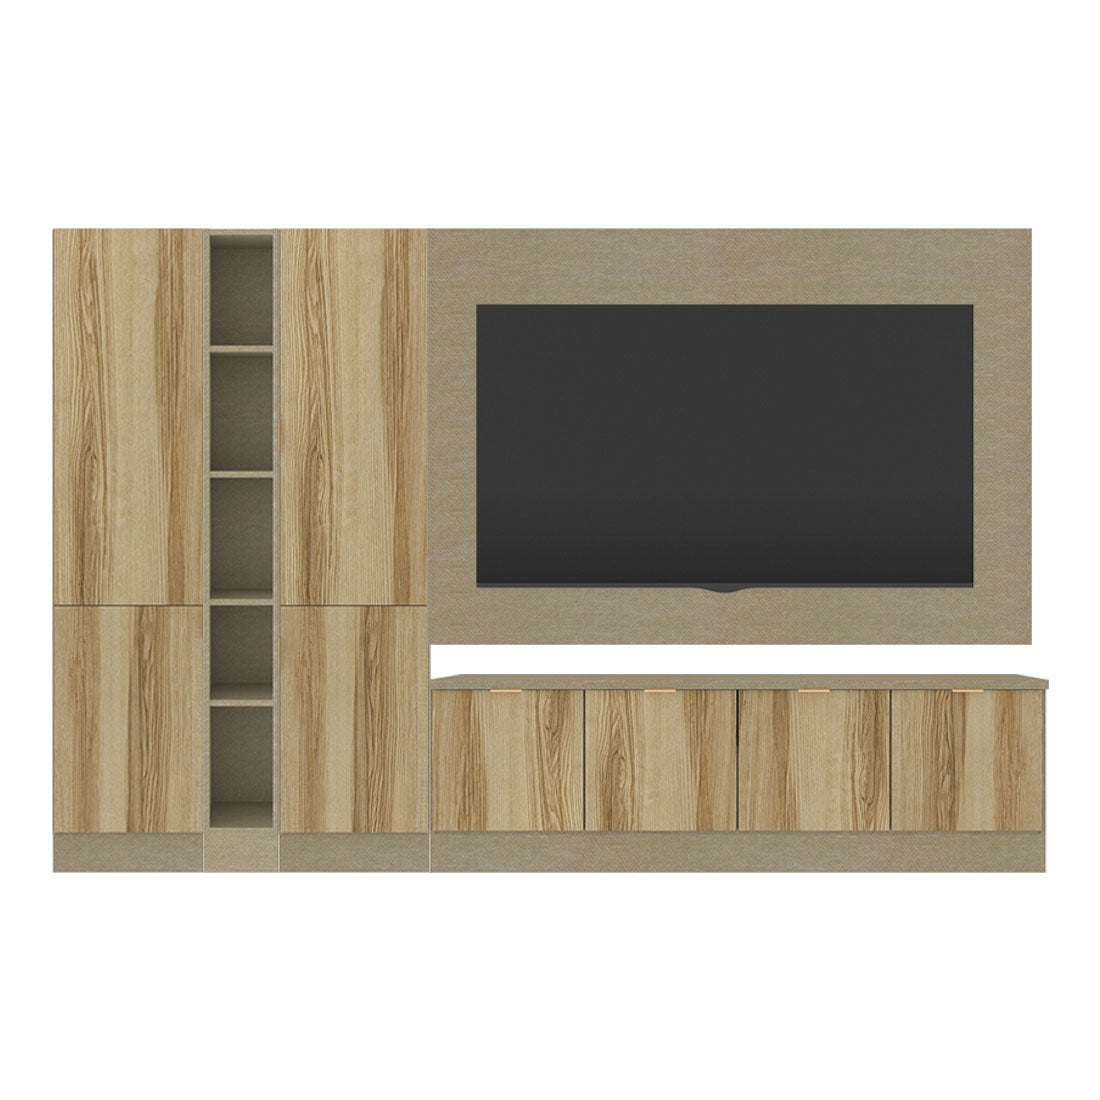 ชุดวางทีวีและตู้โชว์ ขนาด 260 ซม. รุ่น Contini Plus สีไม้โทนอ่อน01